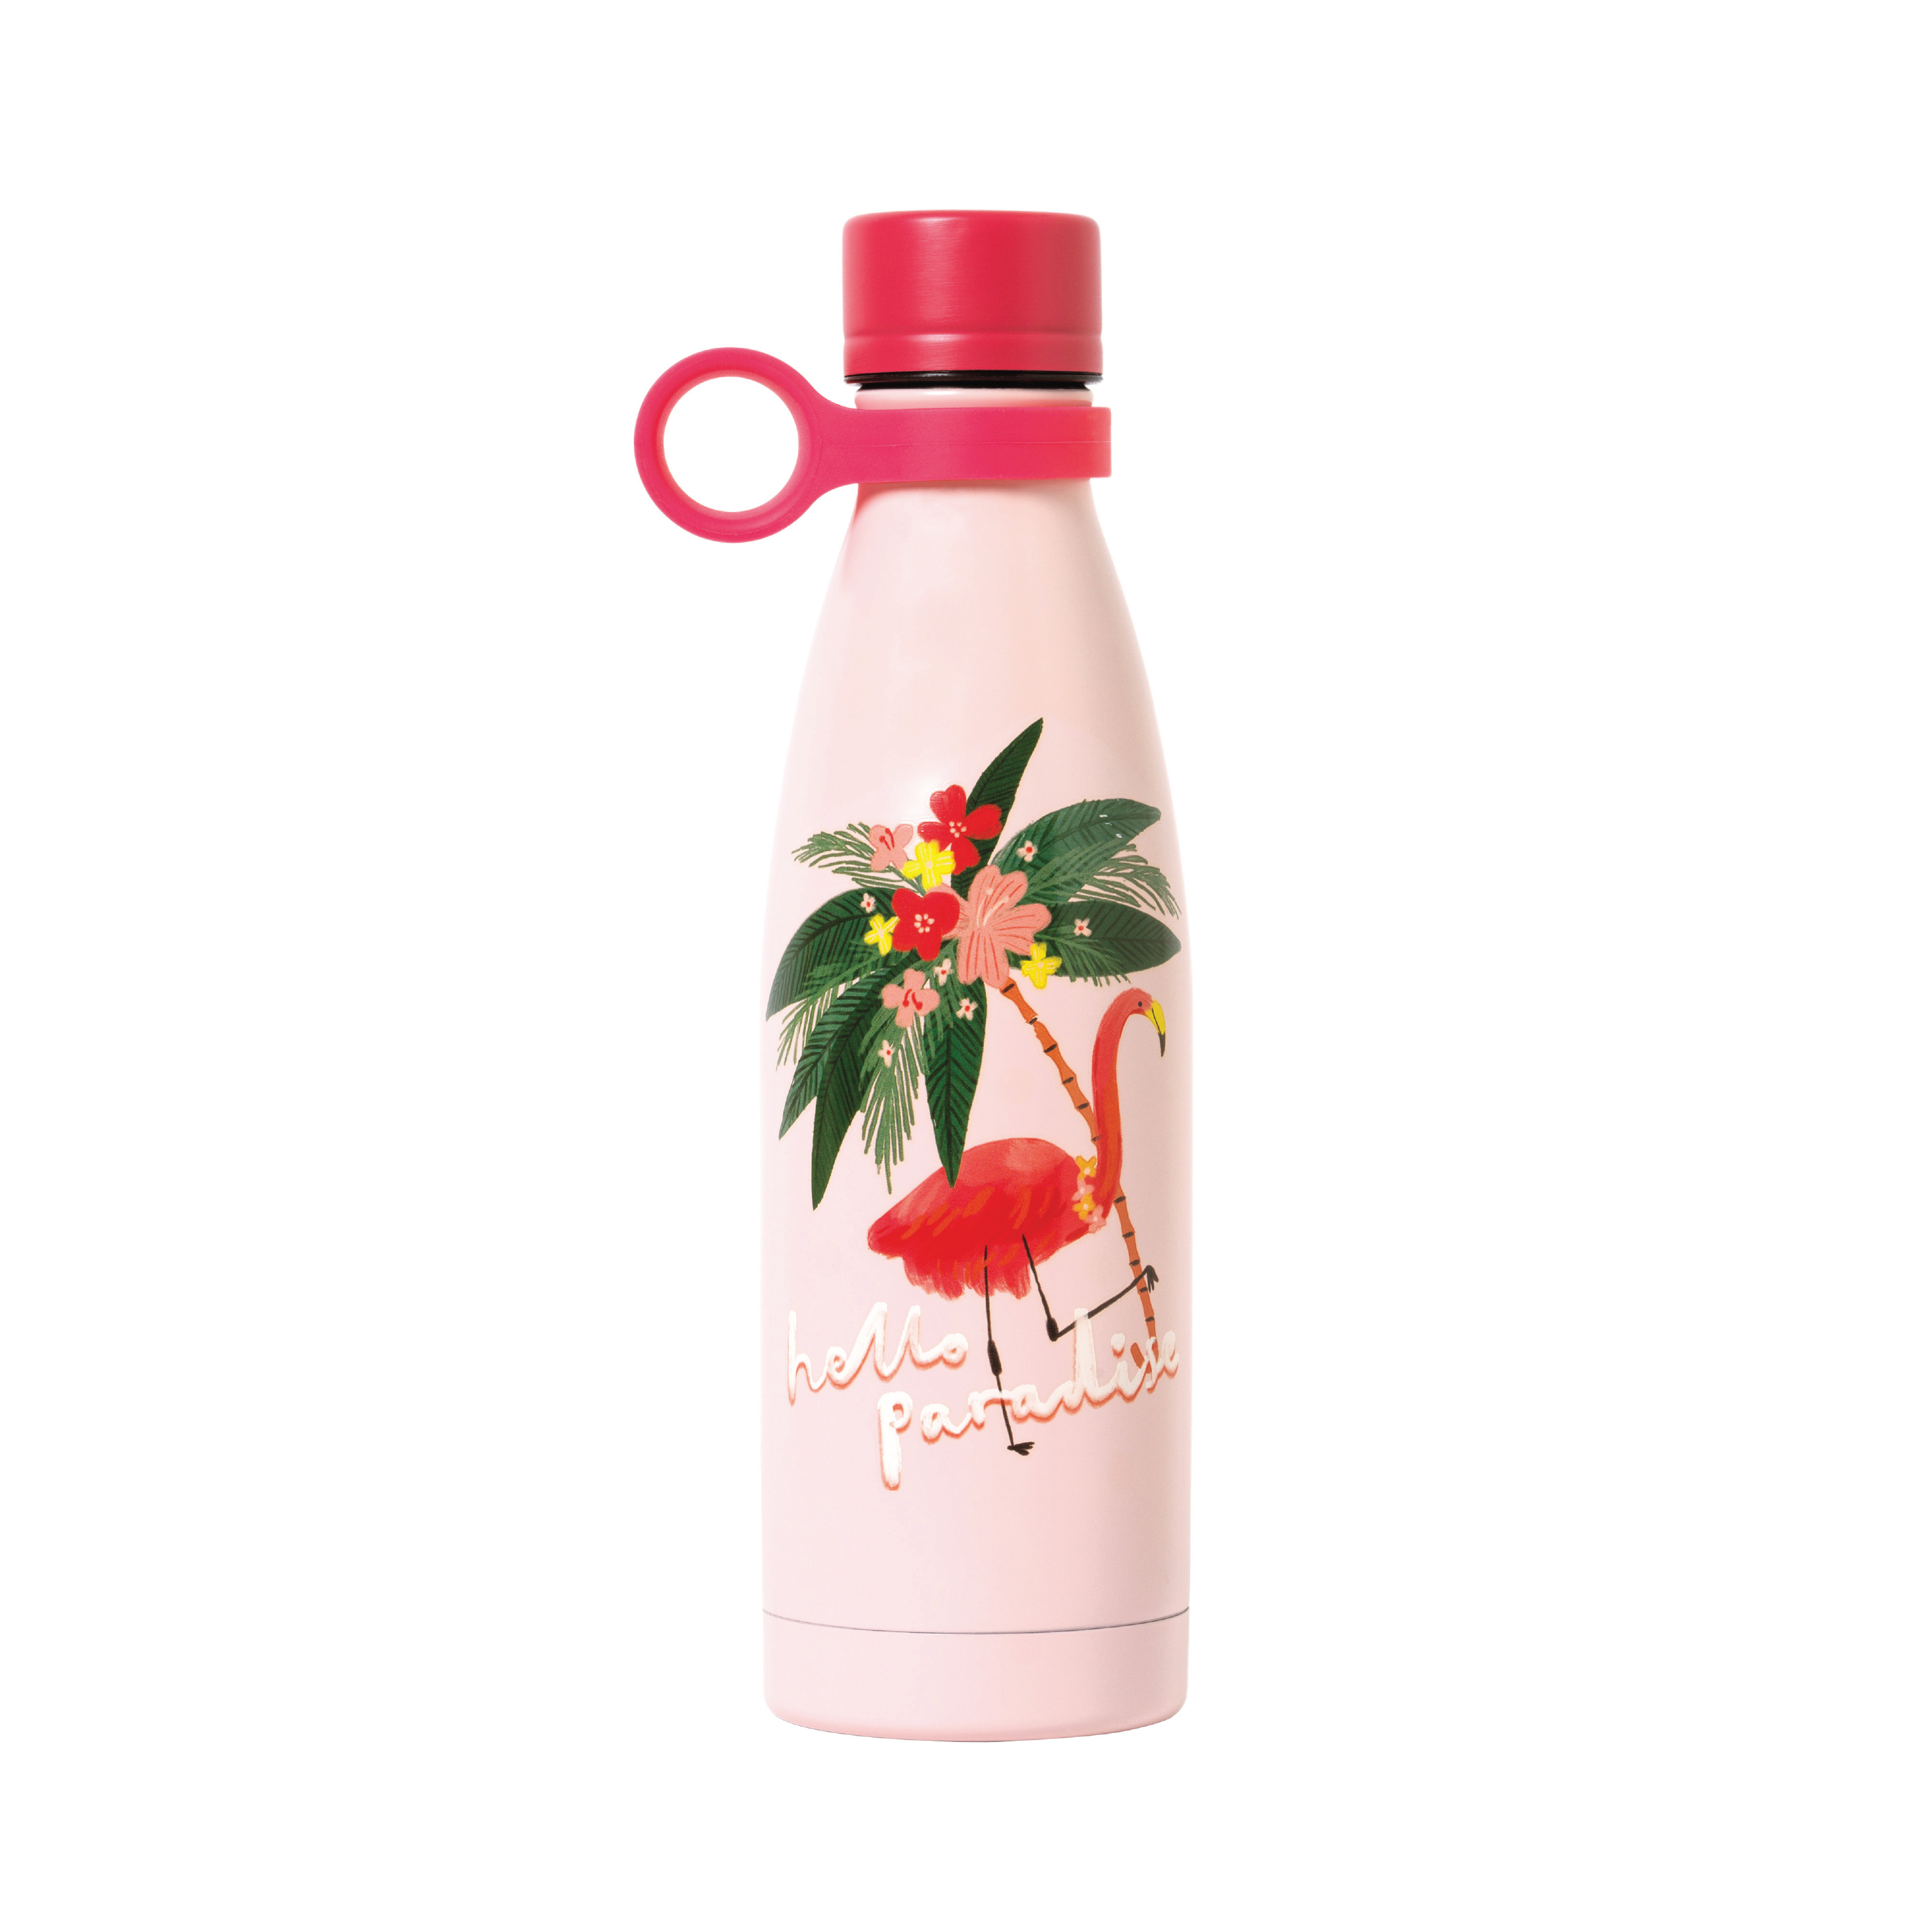 LEGAMI Hot & Cold drikkeflaske 0,5l, Flamingo, 1 stk.